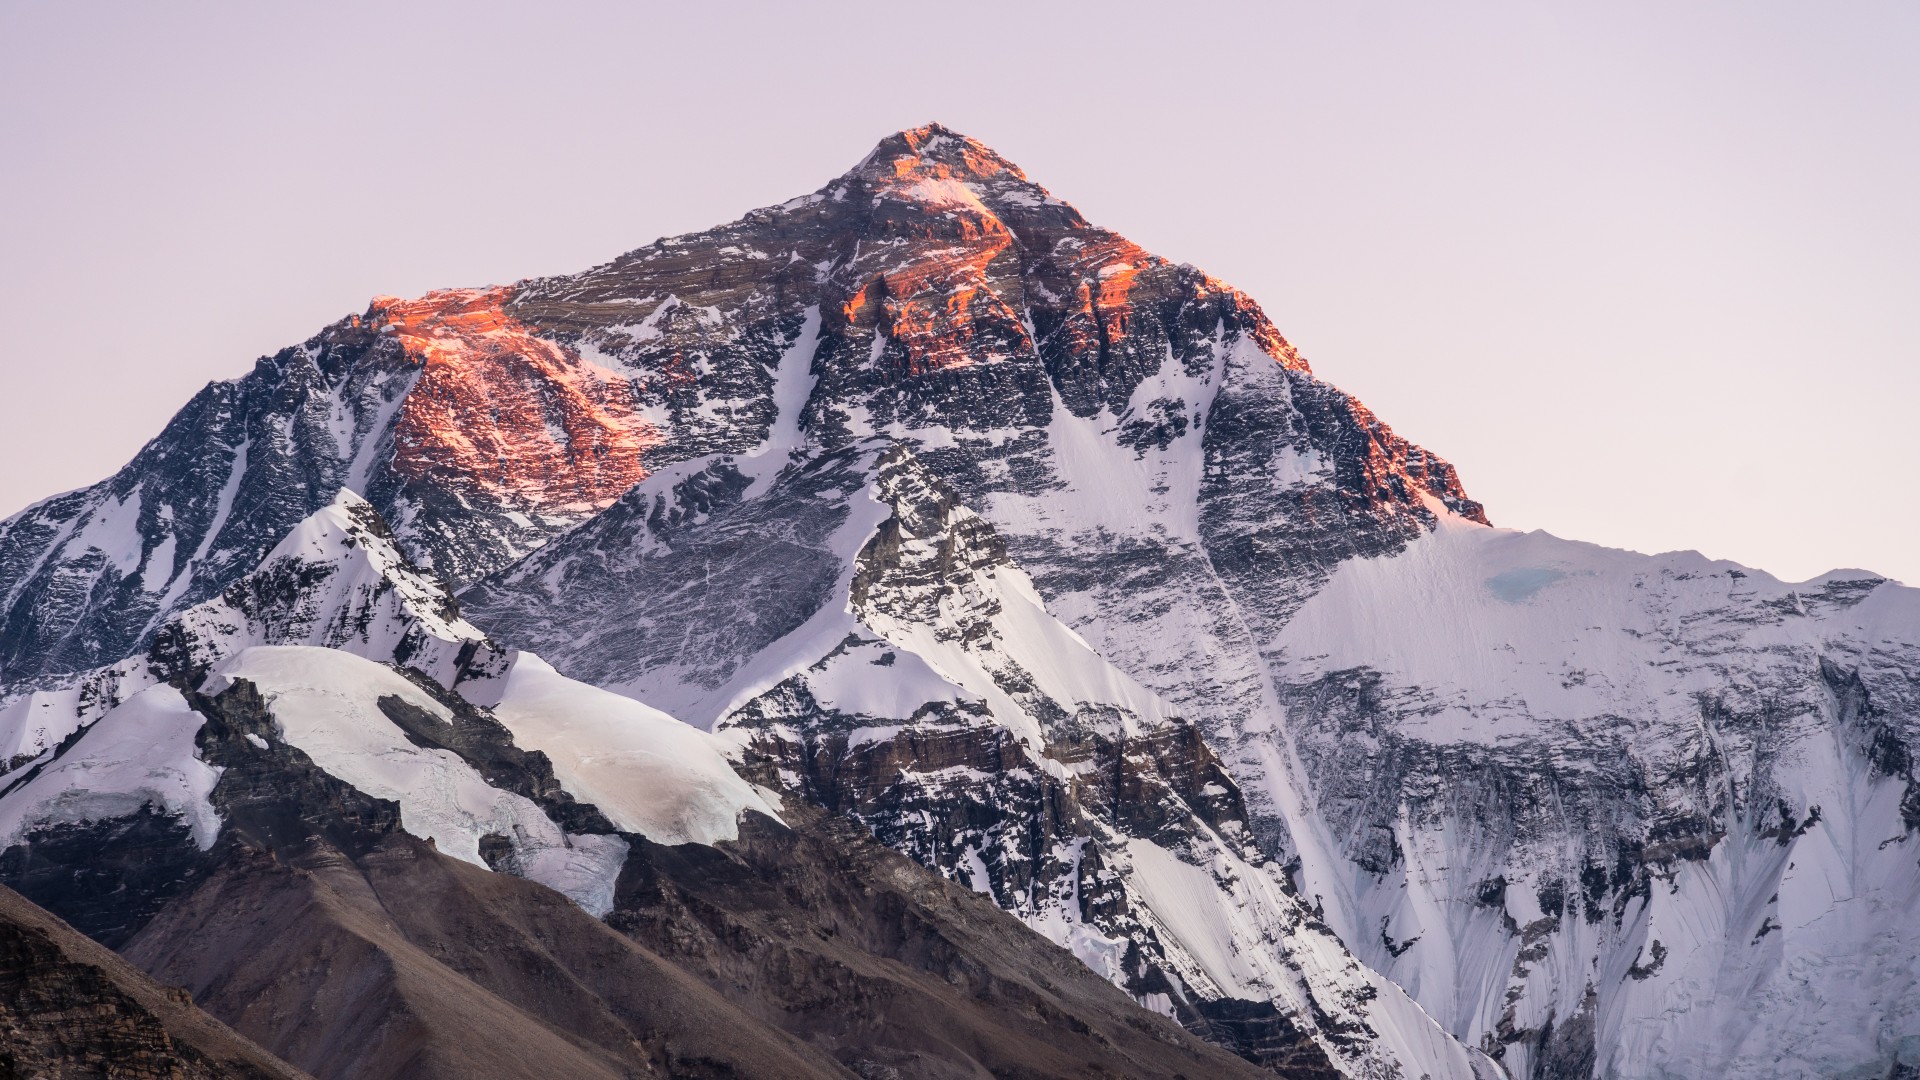 creative ways to die - Snowboard off Mount Everest